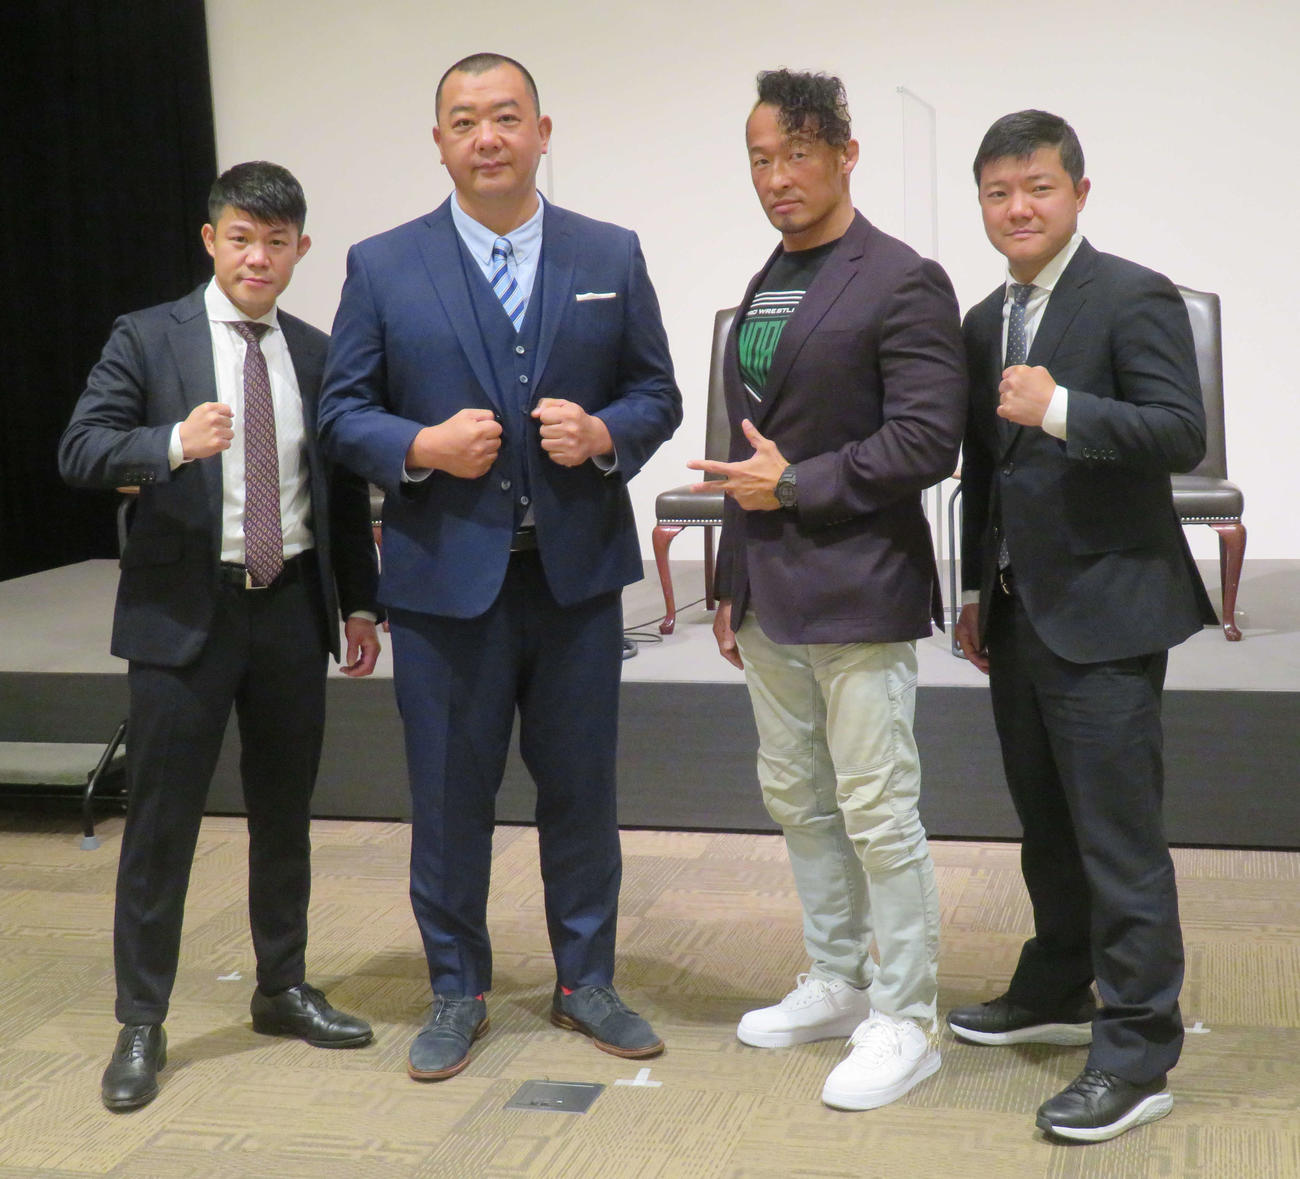 ボクシングのスパーリング形式で対決するTKO木下（左から2人目）とノア丸藤（同3人目）。左端は亀田興毅会長、右端は亀田大毅副会長